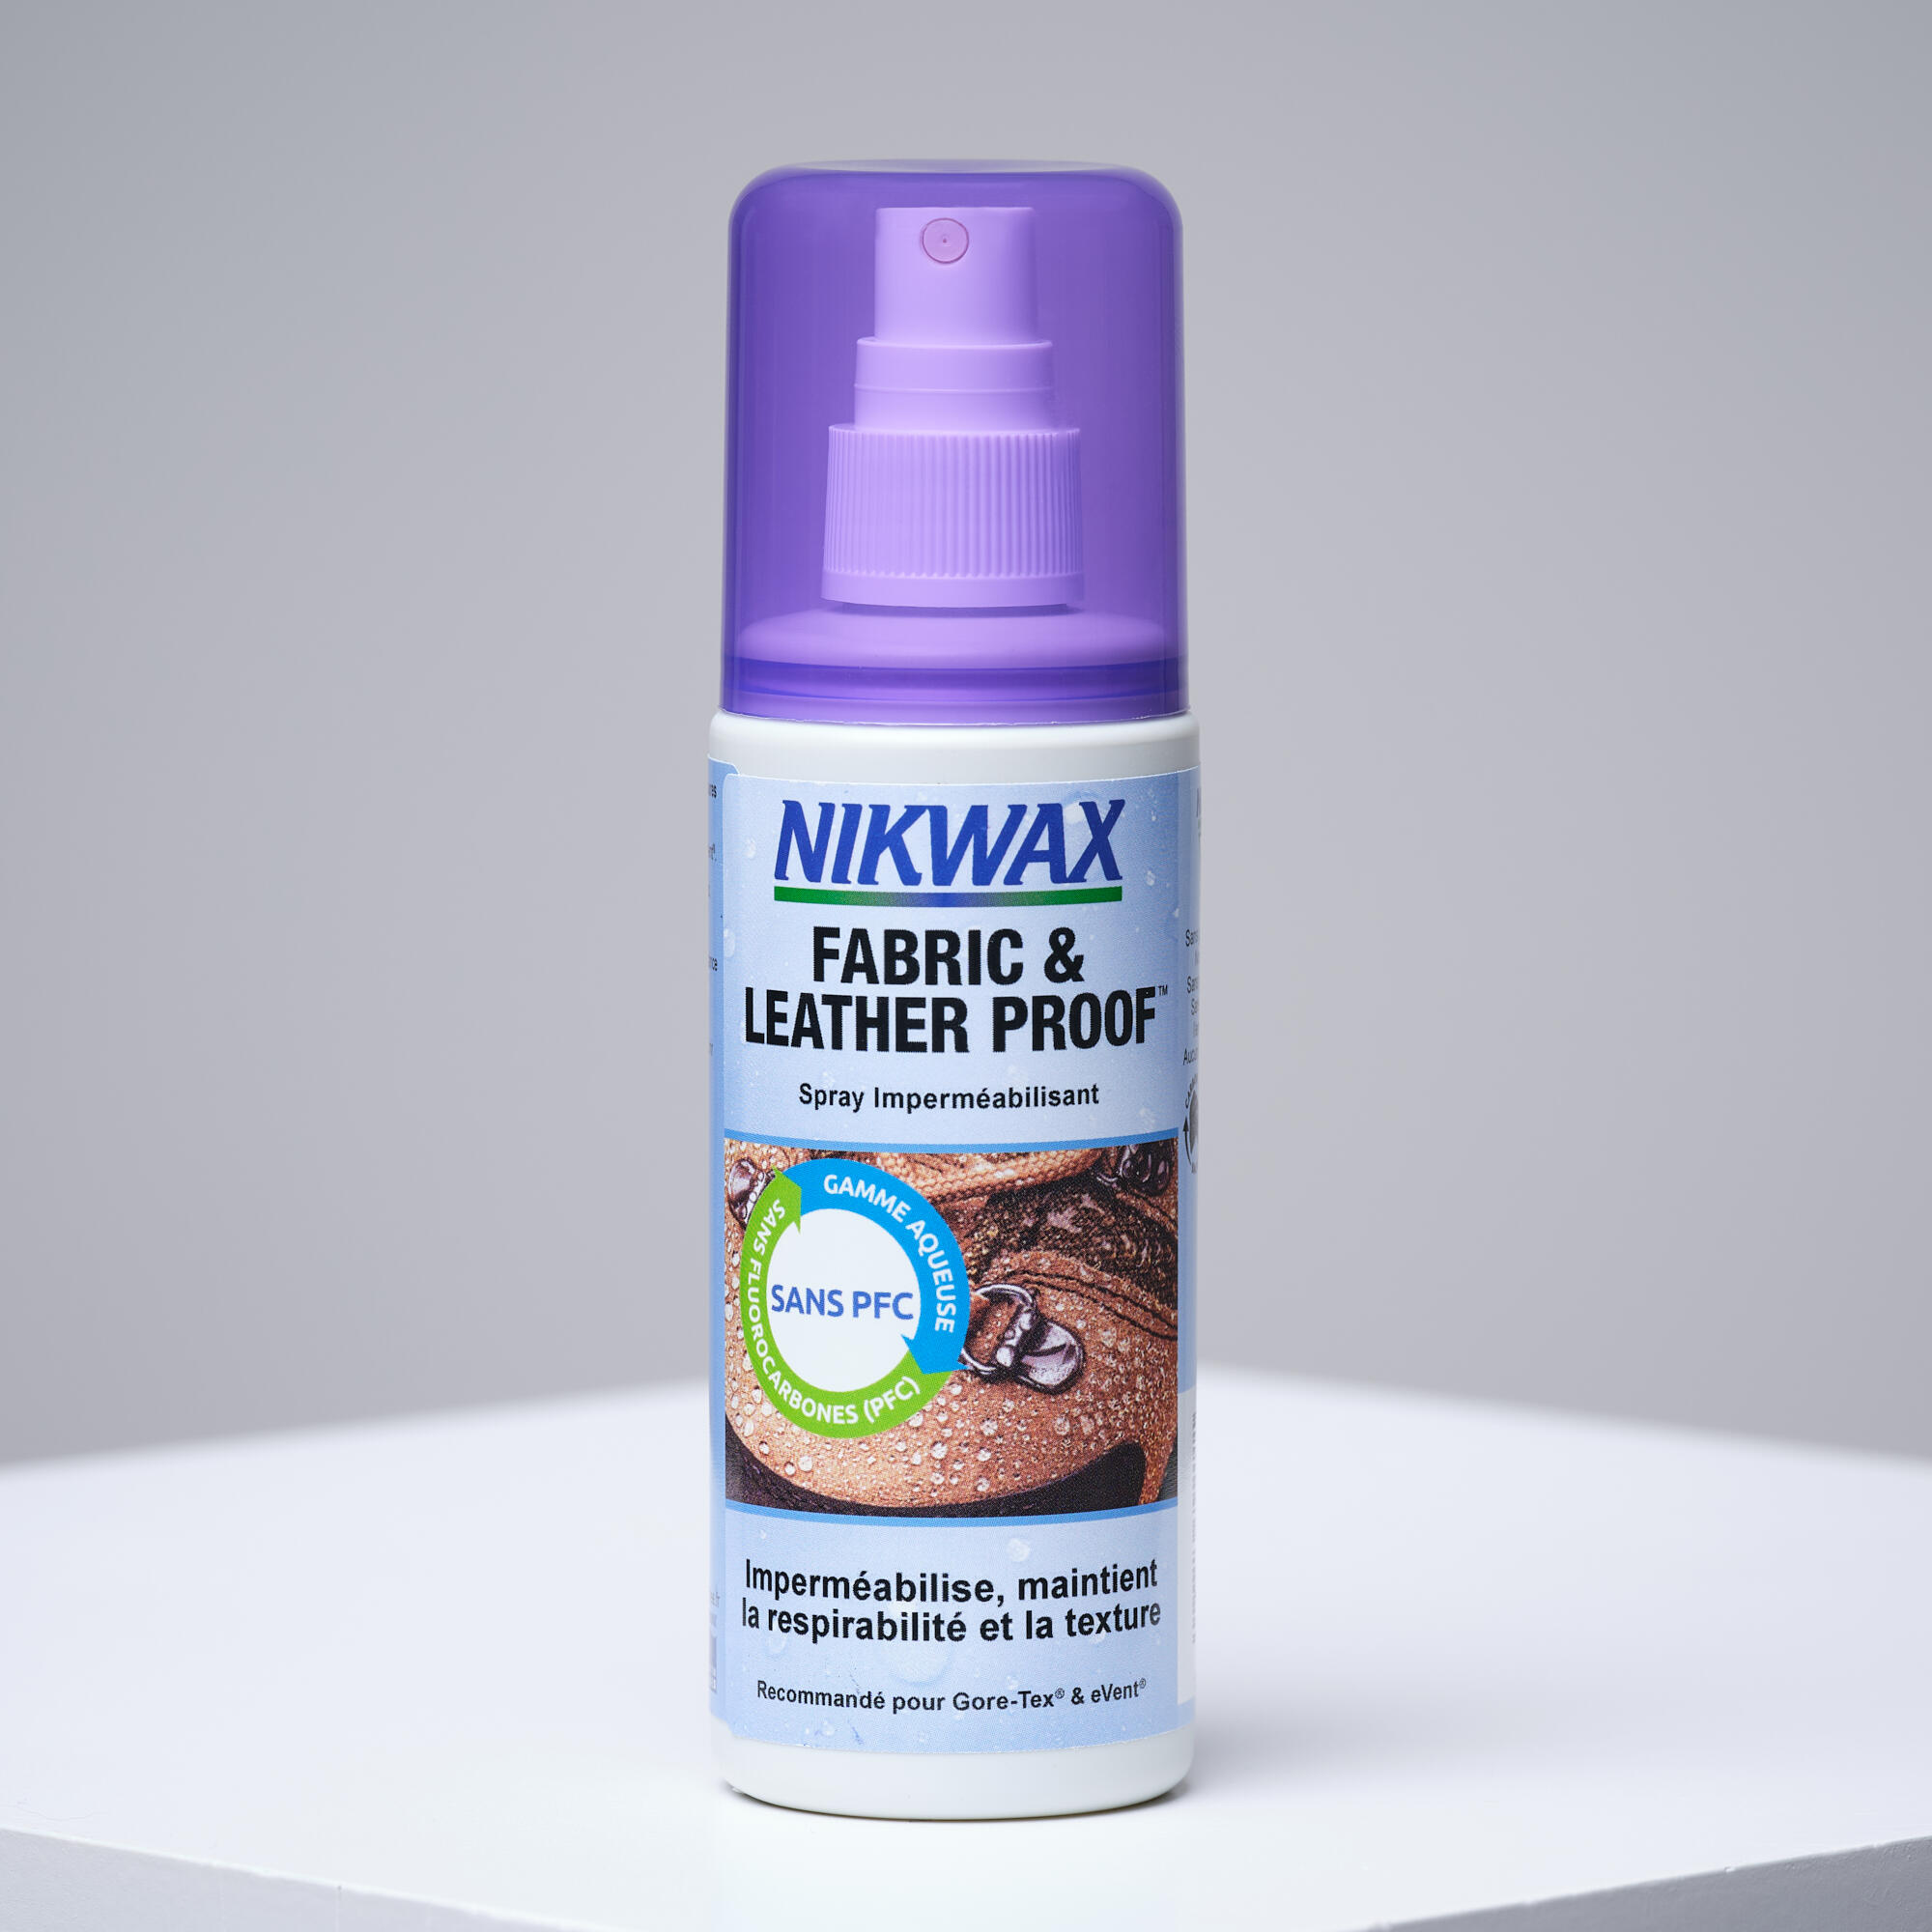 Spray de reimpermeabilizare tratament hidrofob pentru piele și textile Nikwax